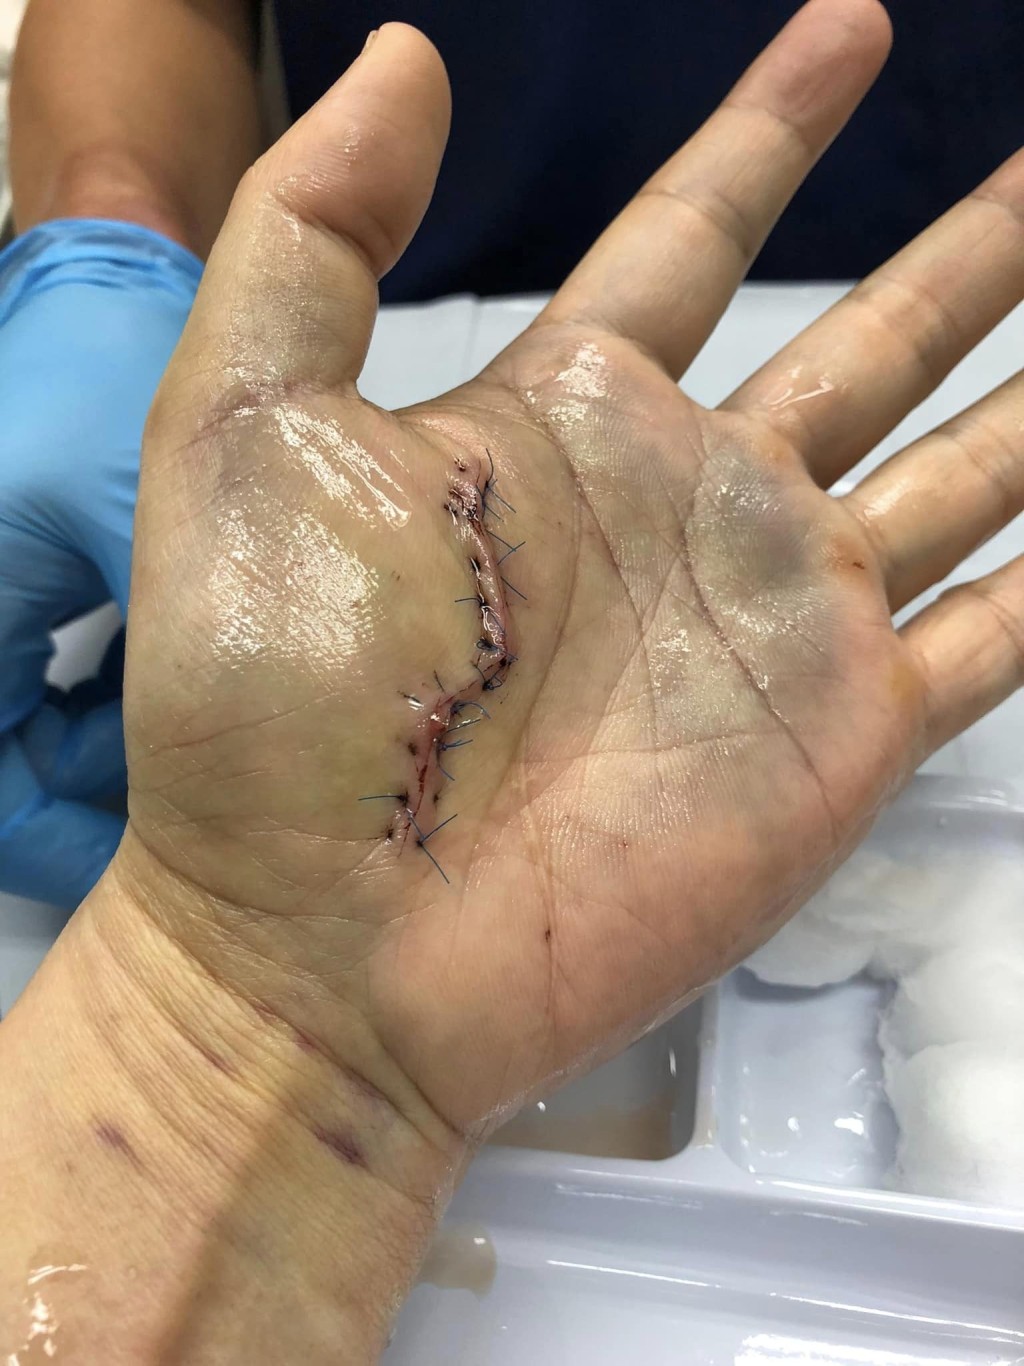 港男的手掌在事发后亦留下一道长伤口。「香港街市鱼类海鲜研究社」FB